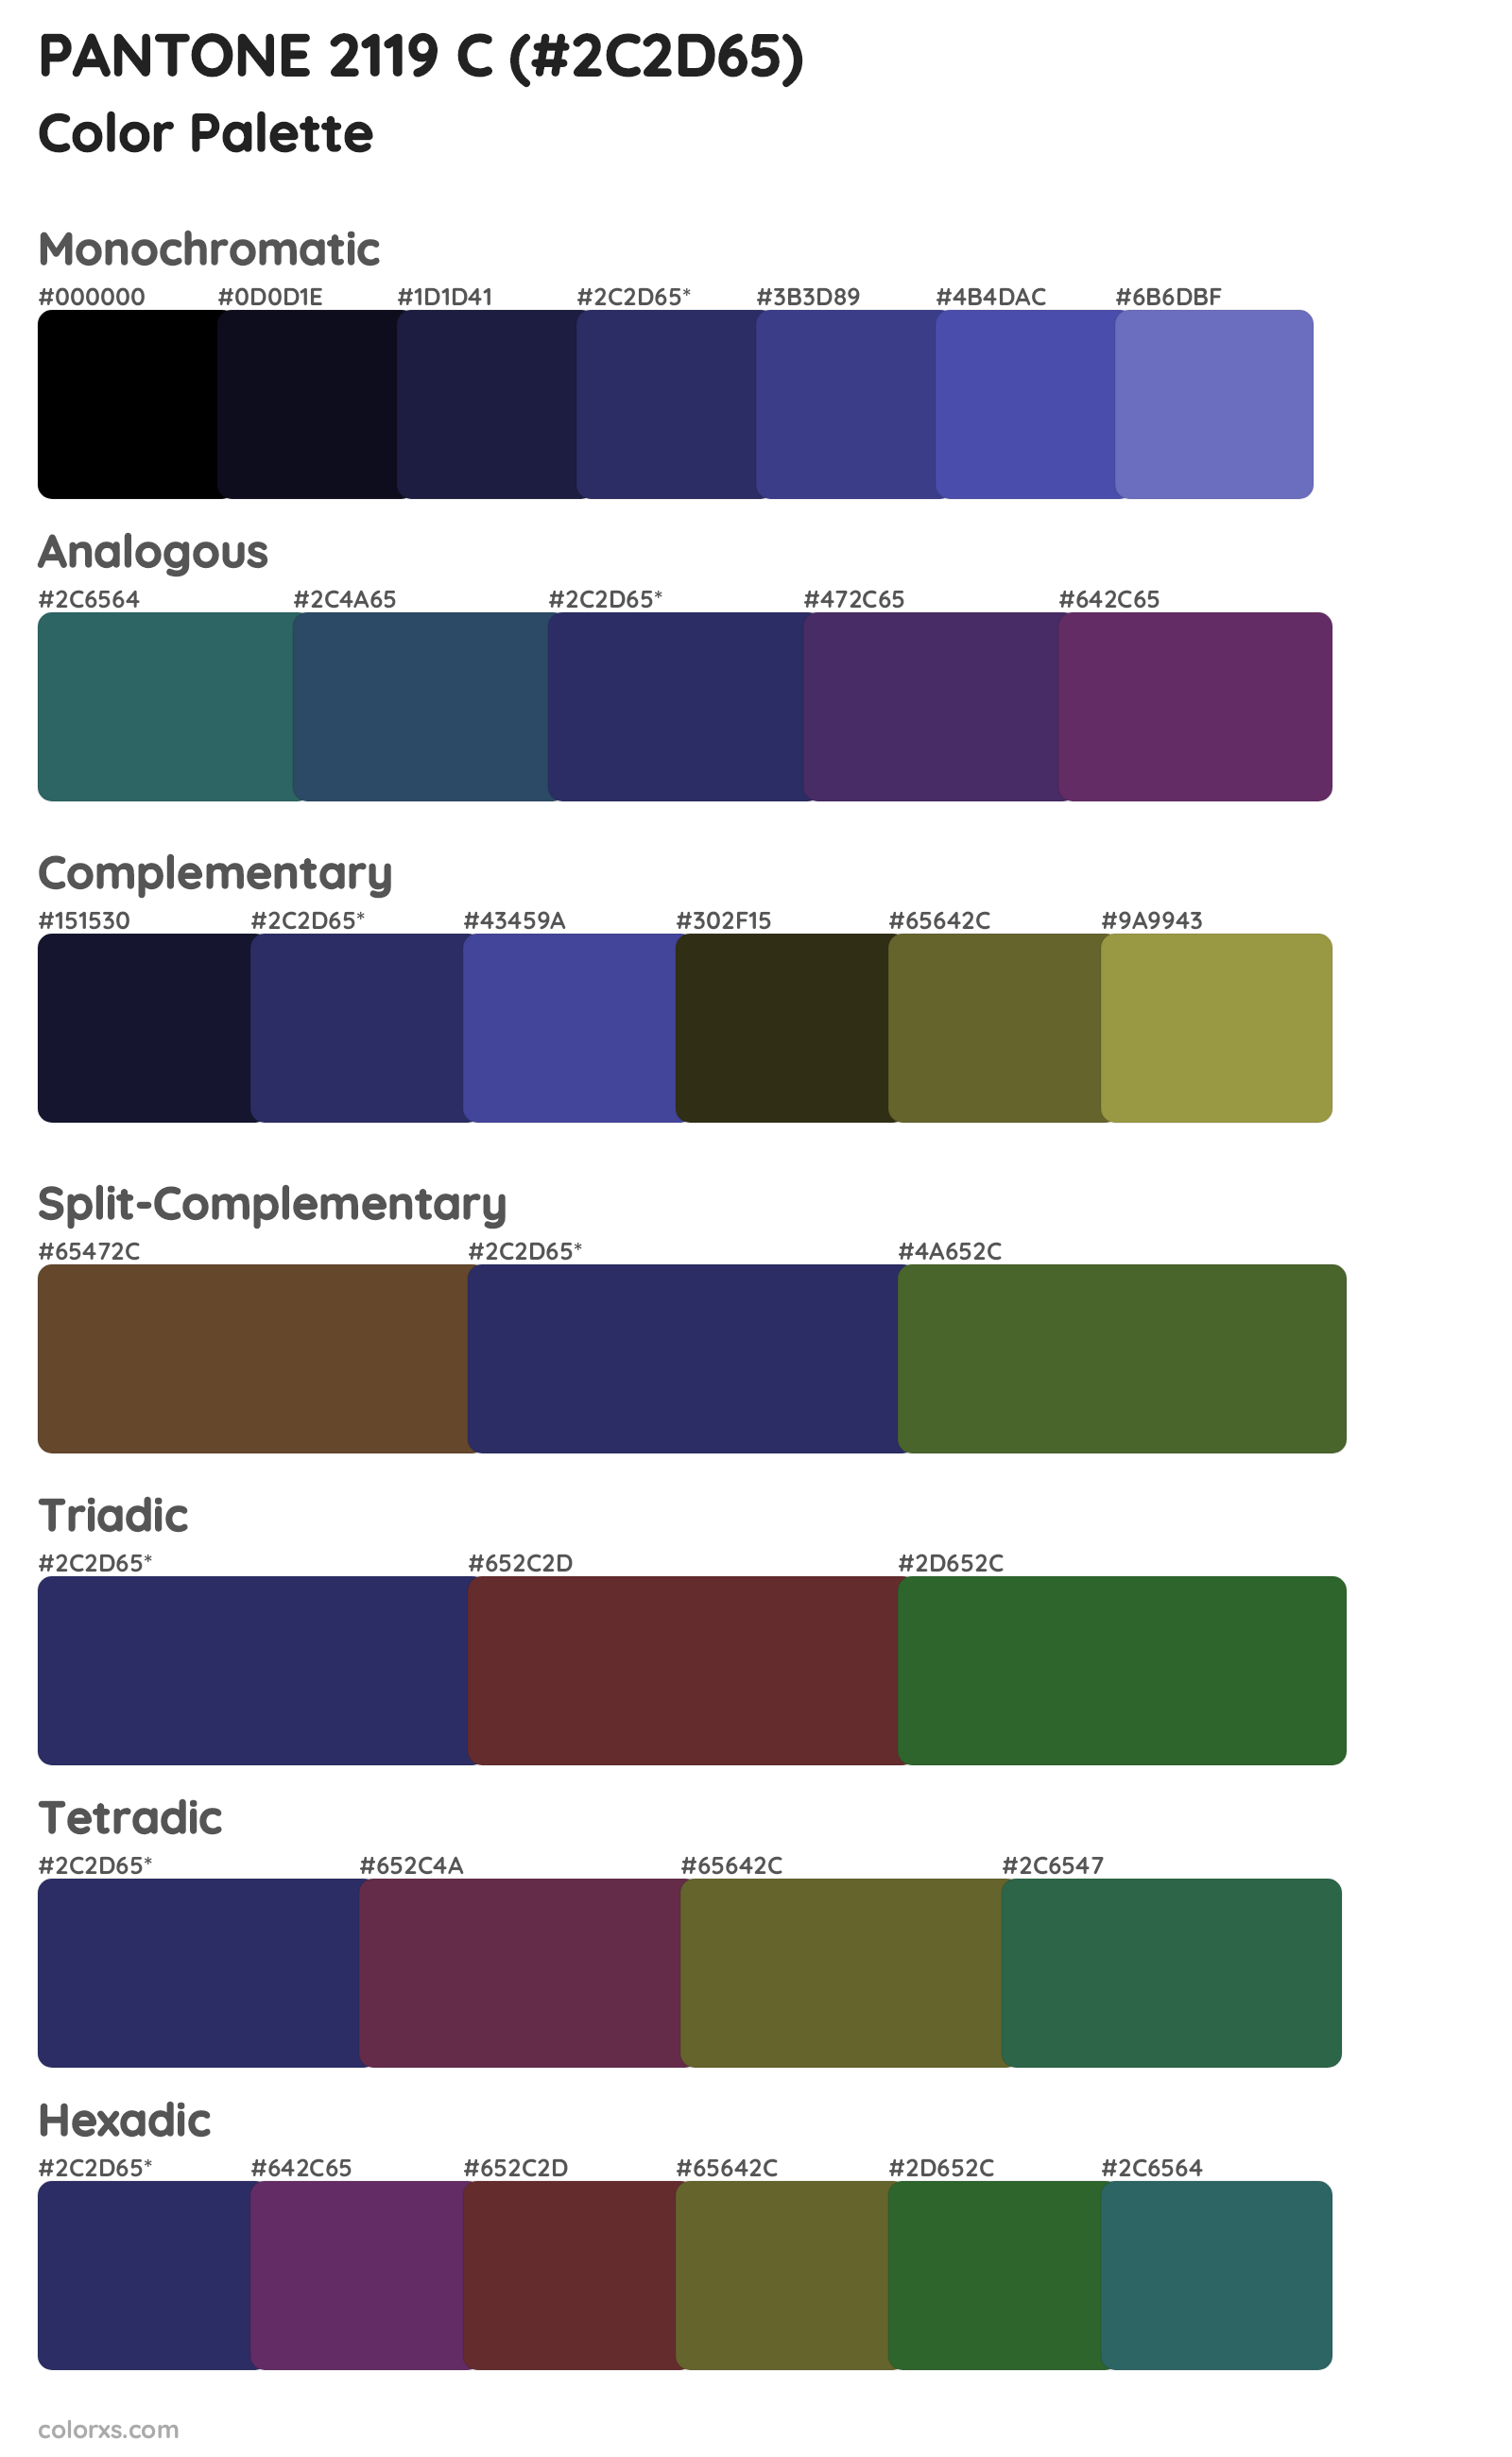 PANTONE 2119 C Color Scheme Palettes